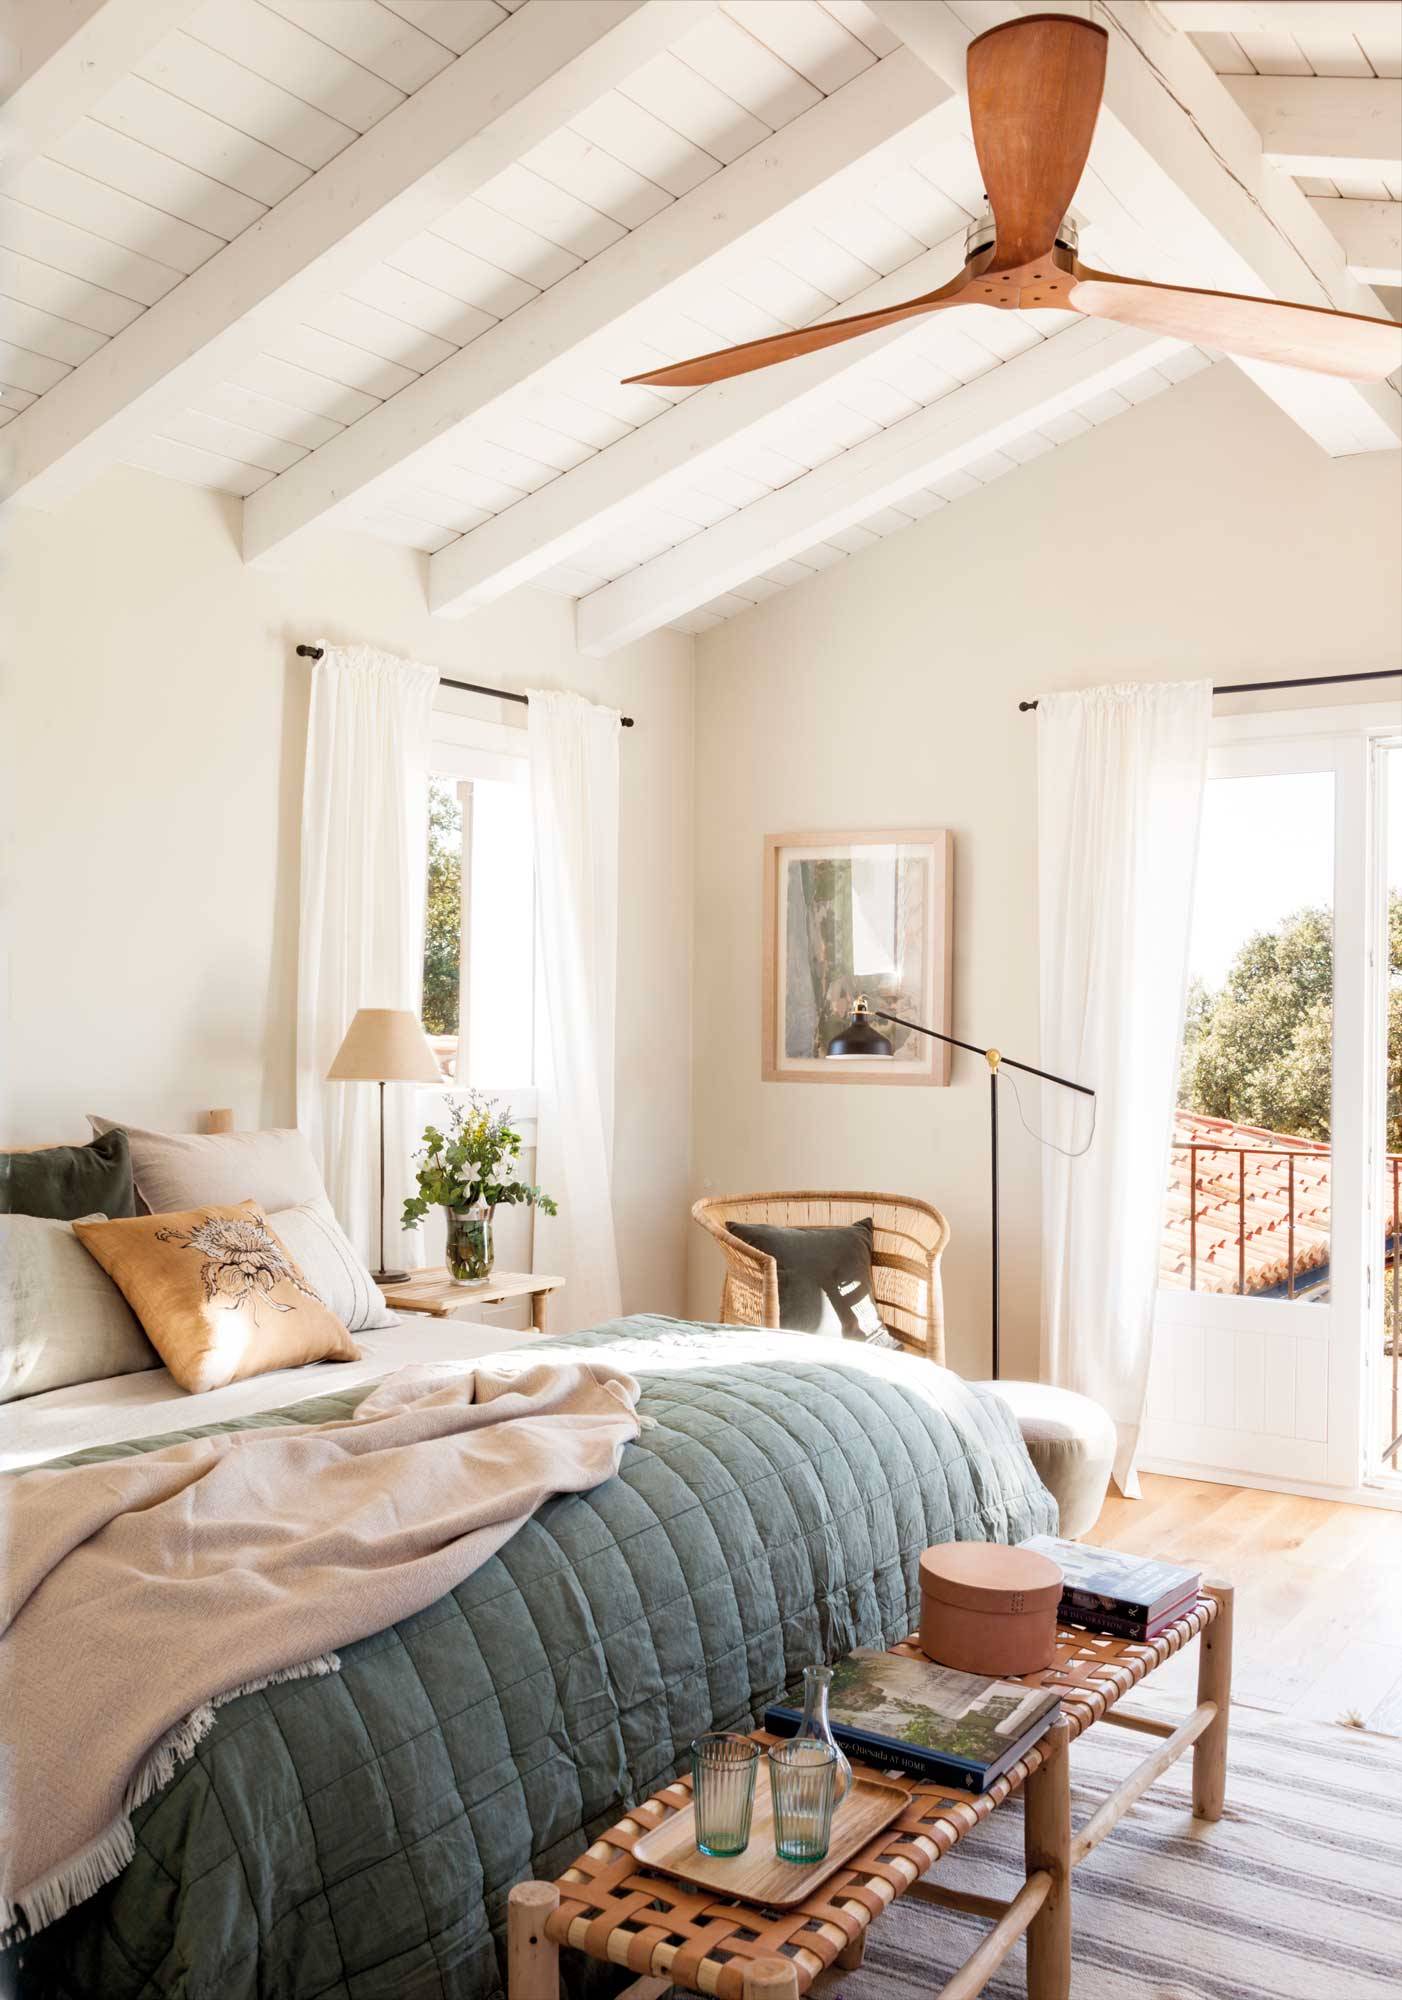 Dormitorio de verano con ventilador de techo y ropa de cama azul y blanca.  